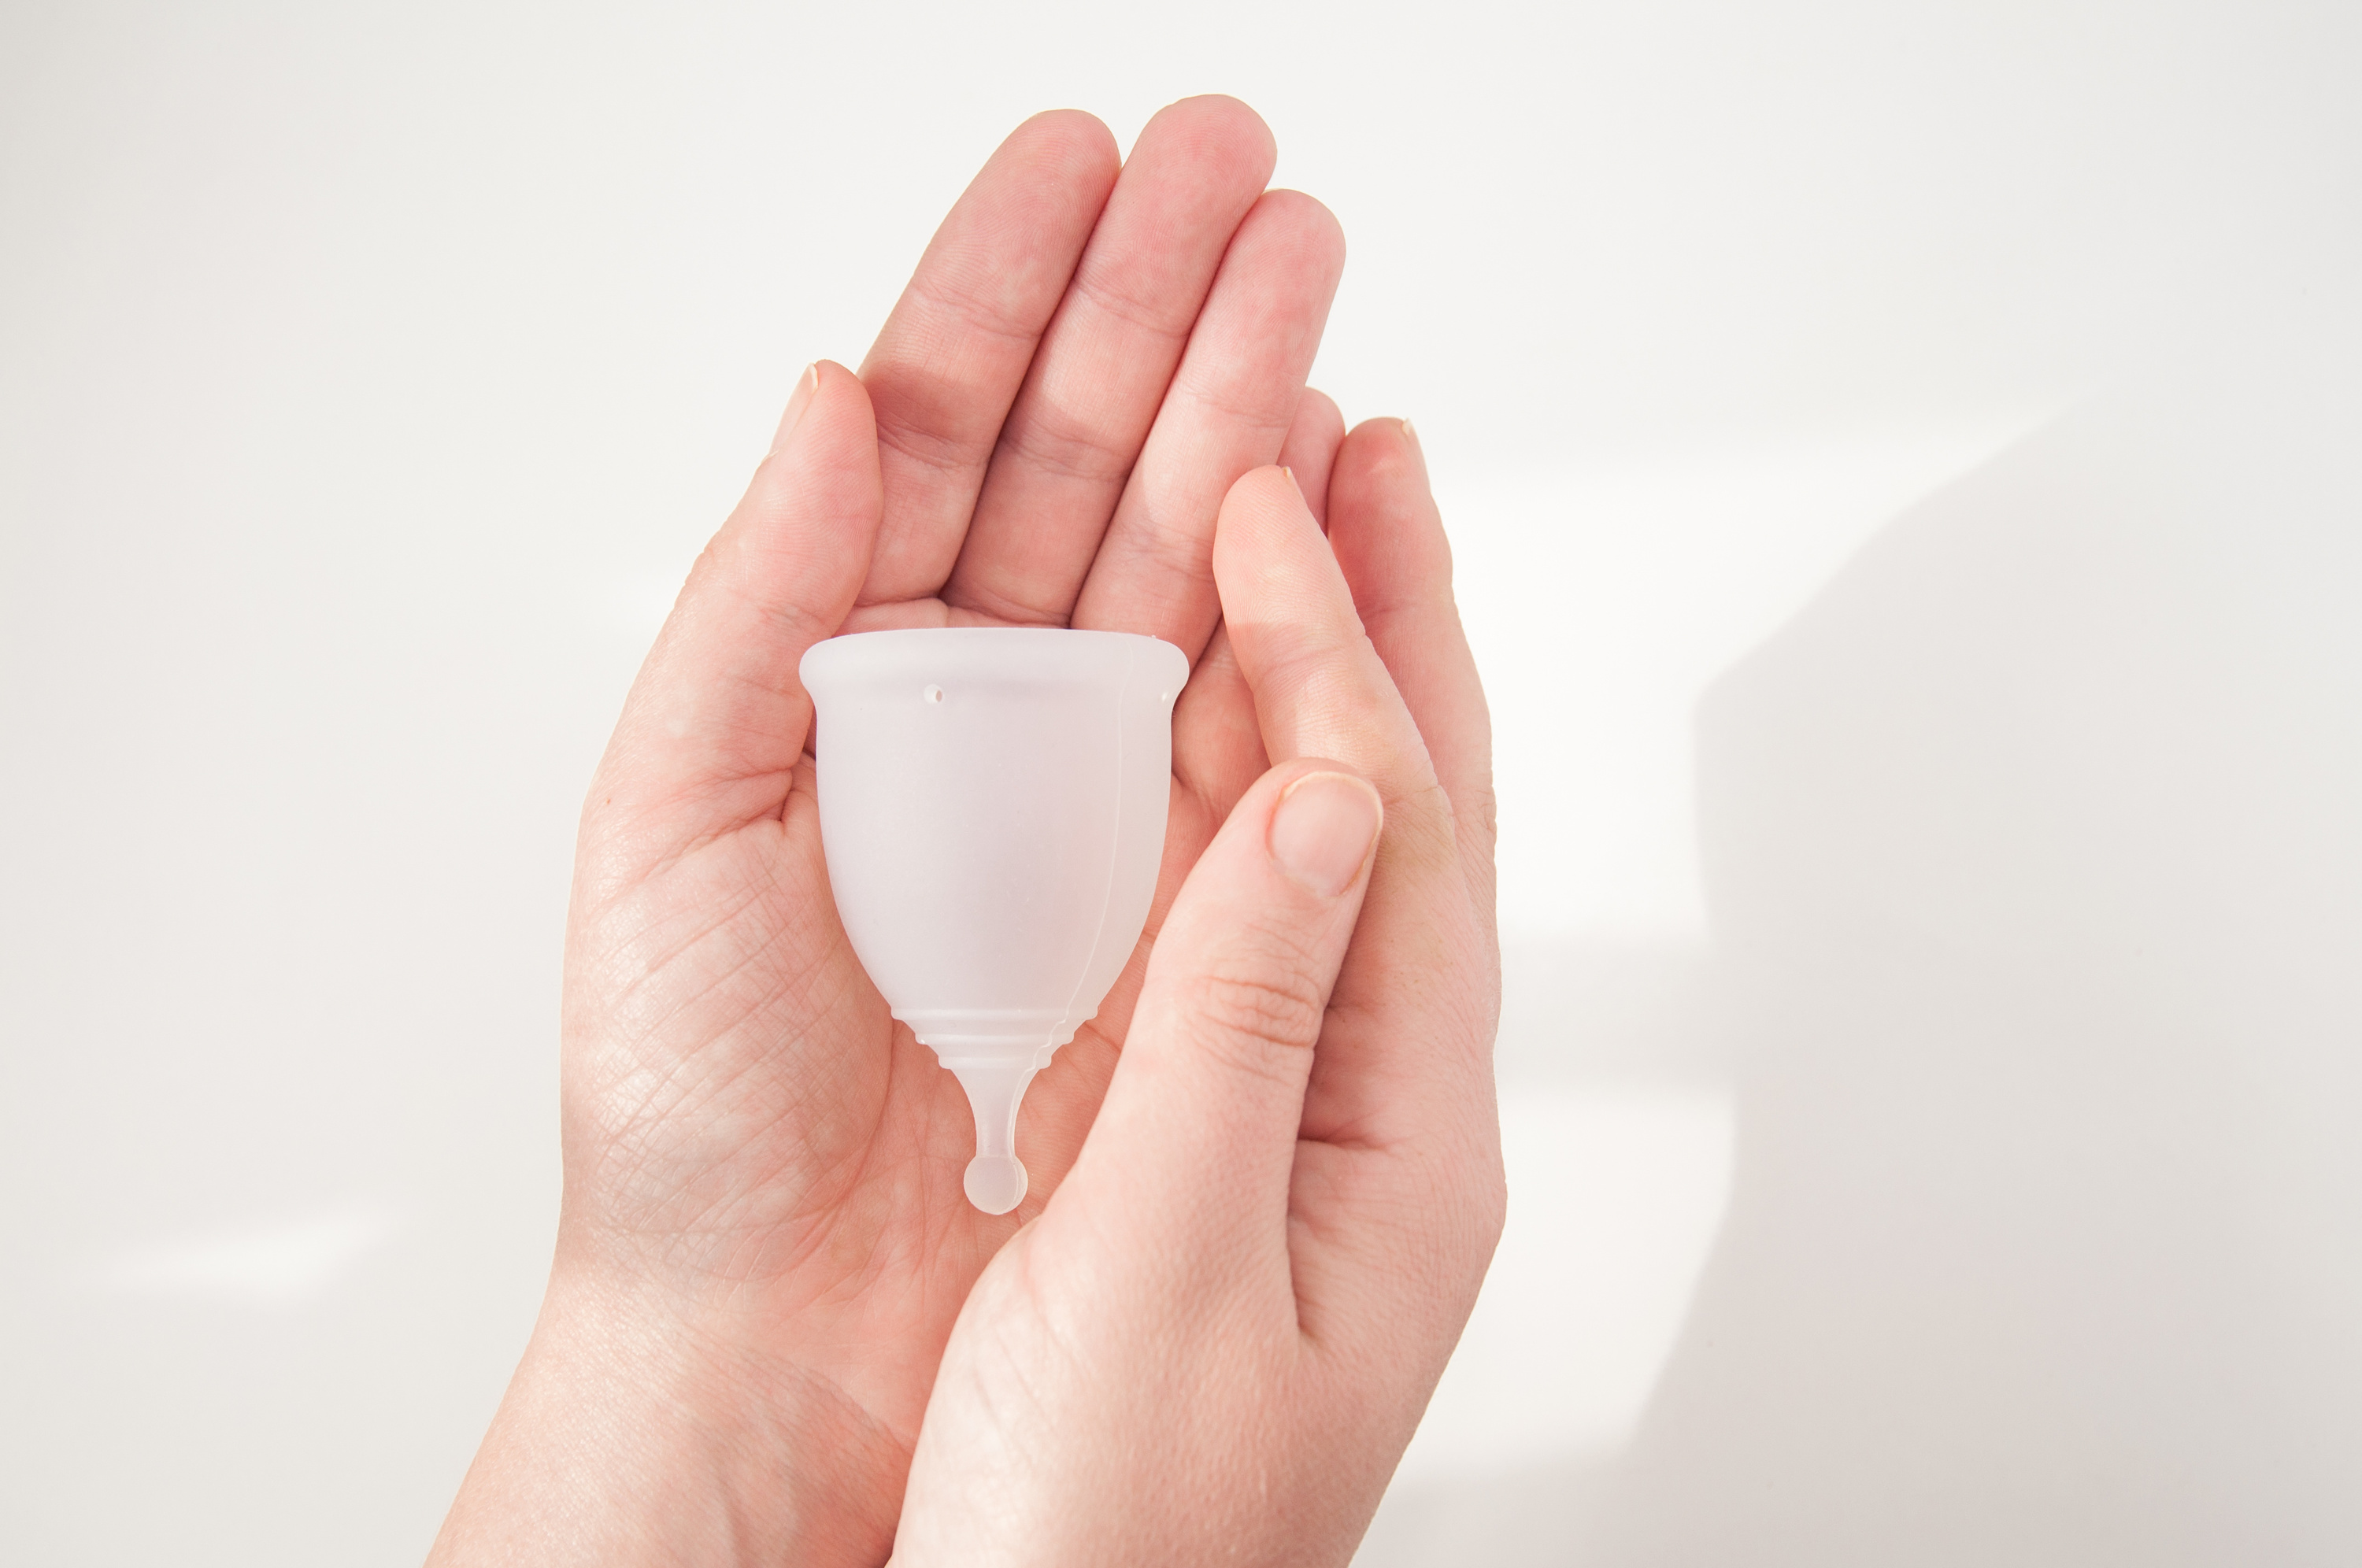 La cup, la solution idéale contre les infections bactériennes et pour optimiser le microbiome vaginal ? © Svetlana, Adobe Stock